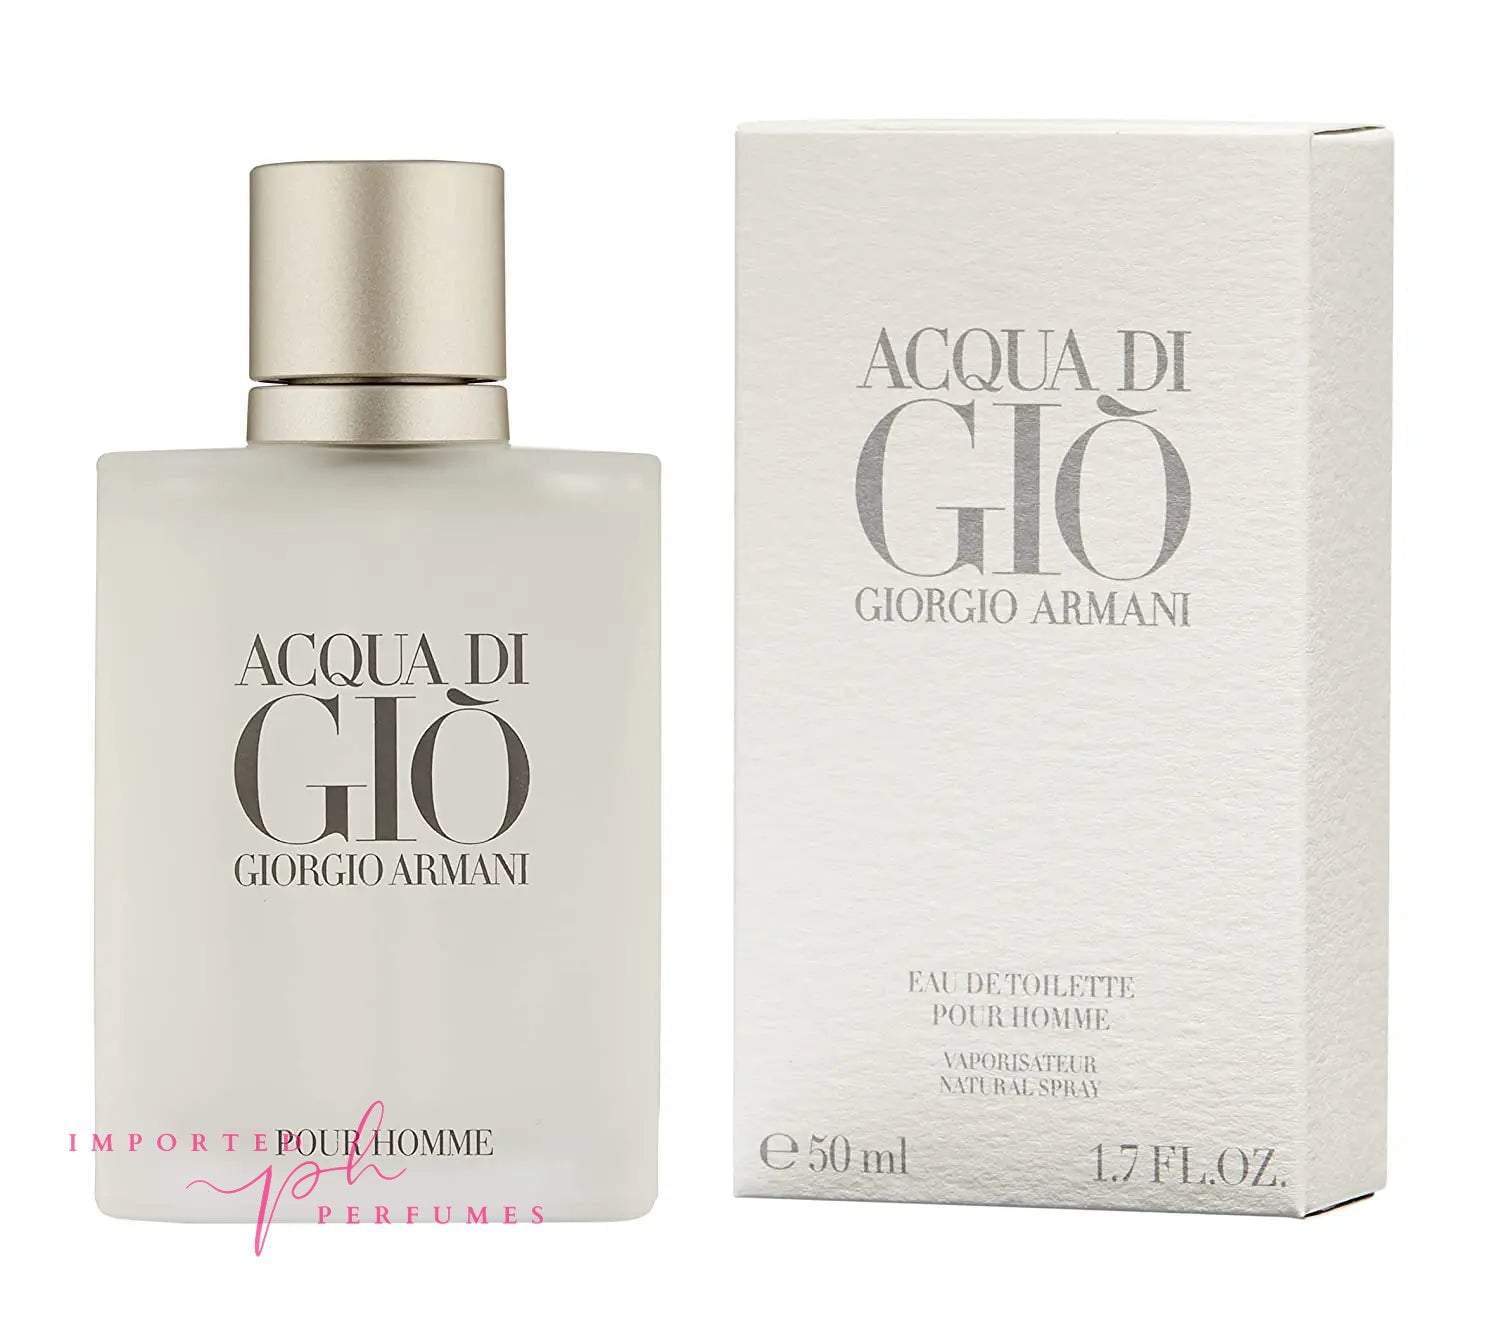 Giorgio Armani Acqua di Gio Pour Homme Eau De Toilette 100ml-Imported Perfumes Co-Giogio Armani,Giorgio Armani,men